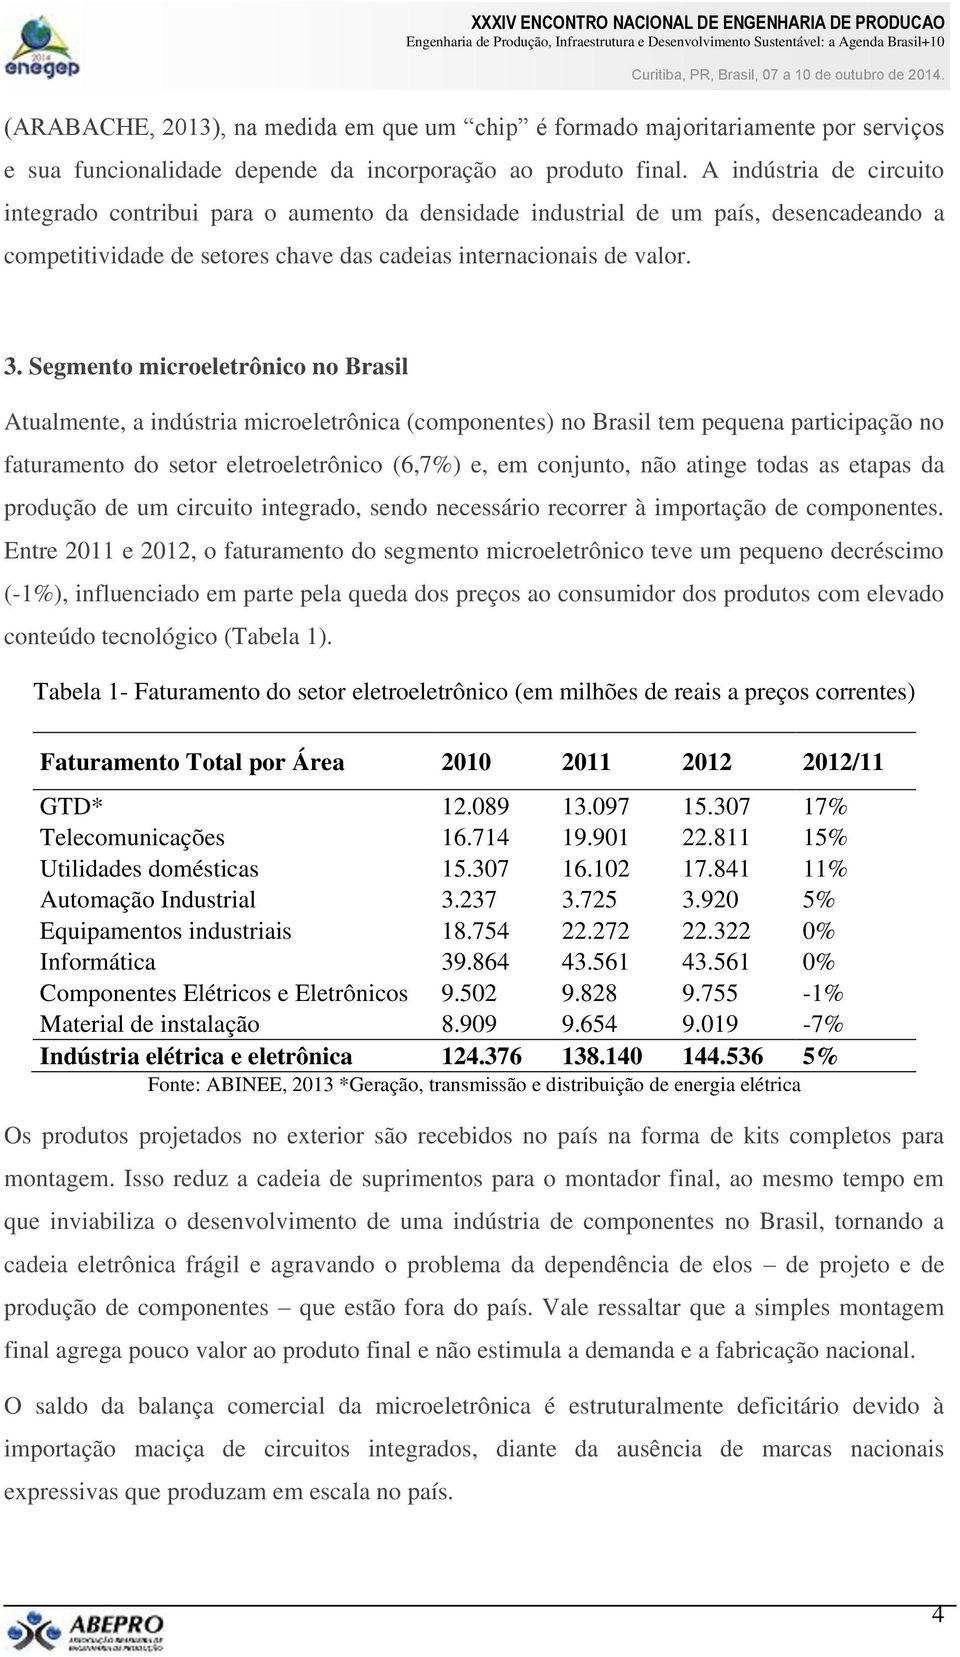 Segmento microeletrônico no Brasil Atualmente, a indústria microeletrônica (componentes) no Brasil tem pequena participação no faturamento do setor eletroeletrônico (6,7%) e, em conjunto, não atinge